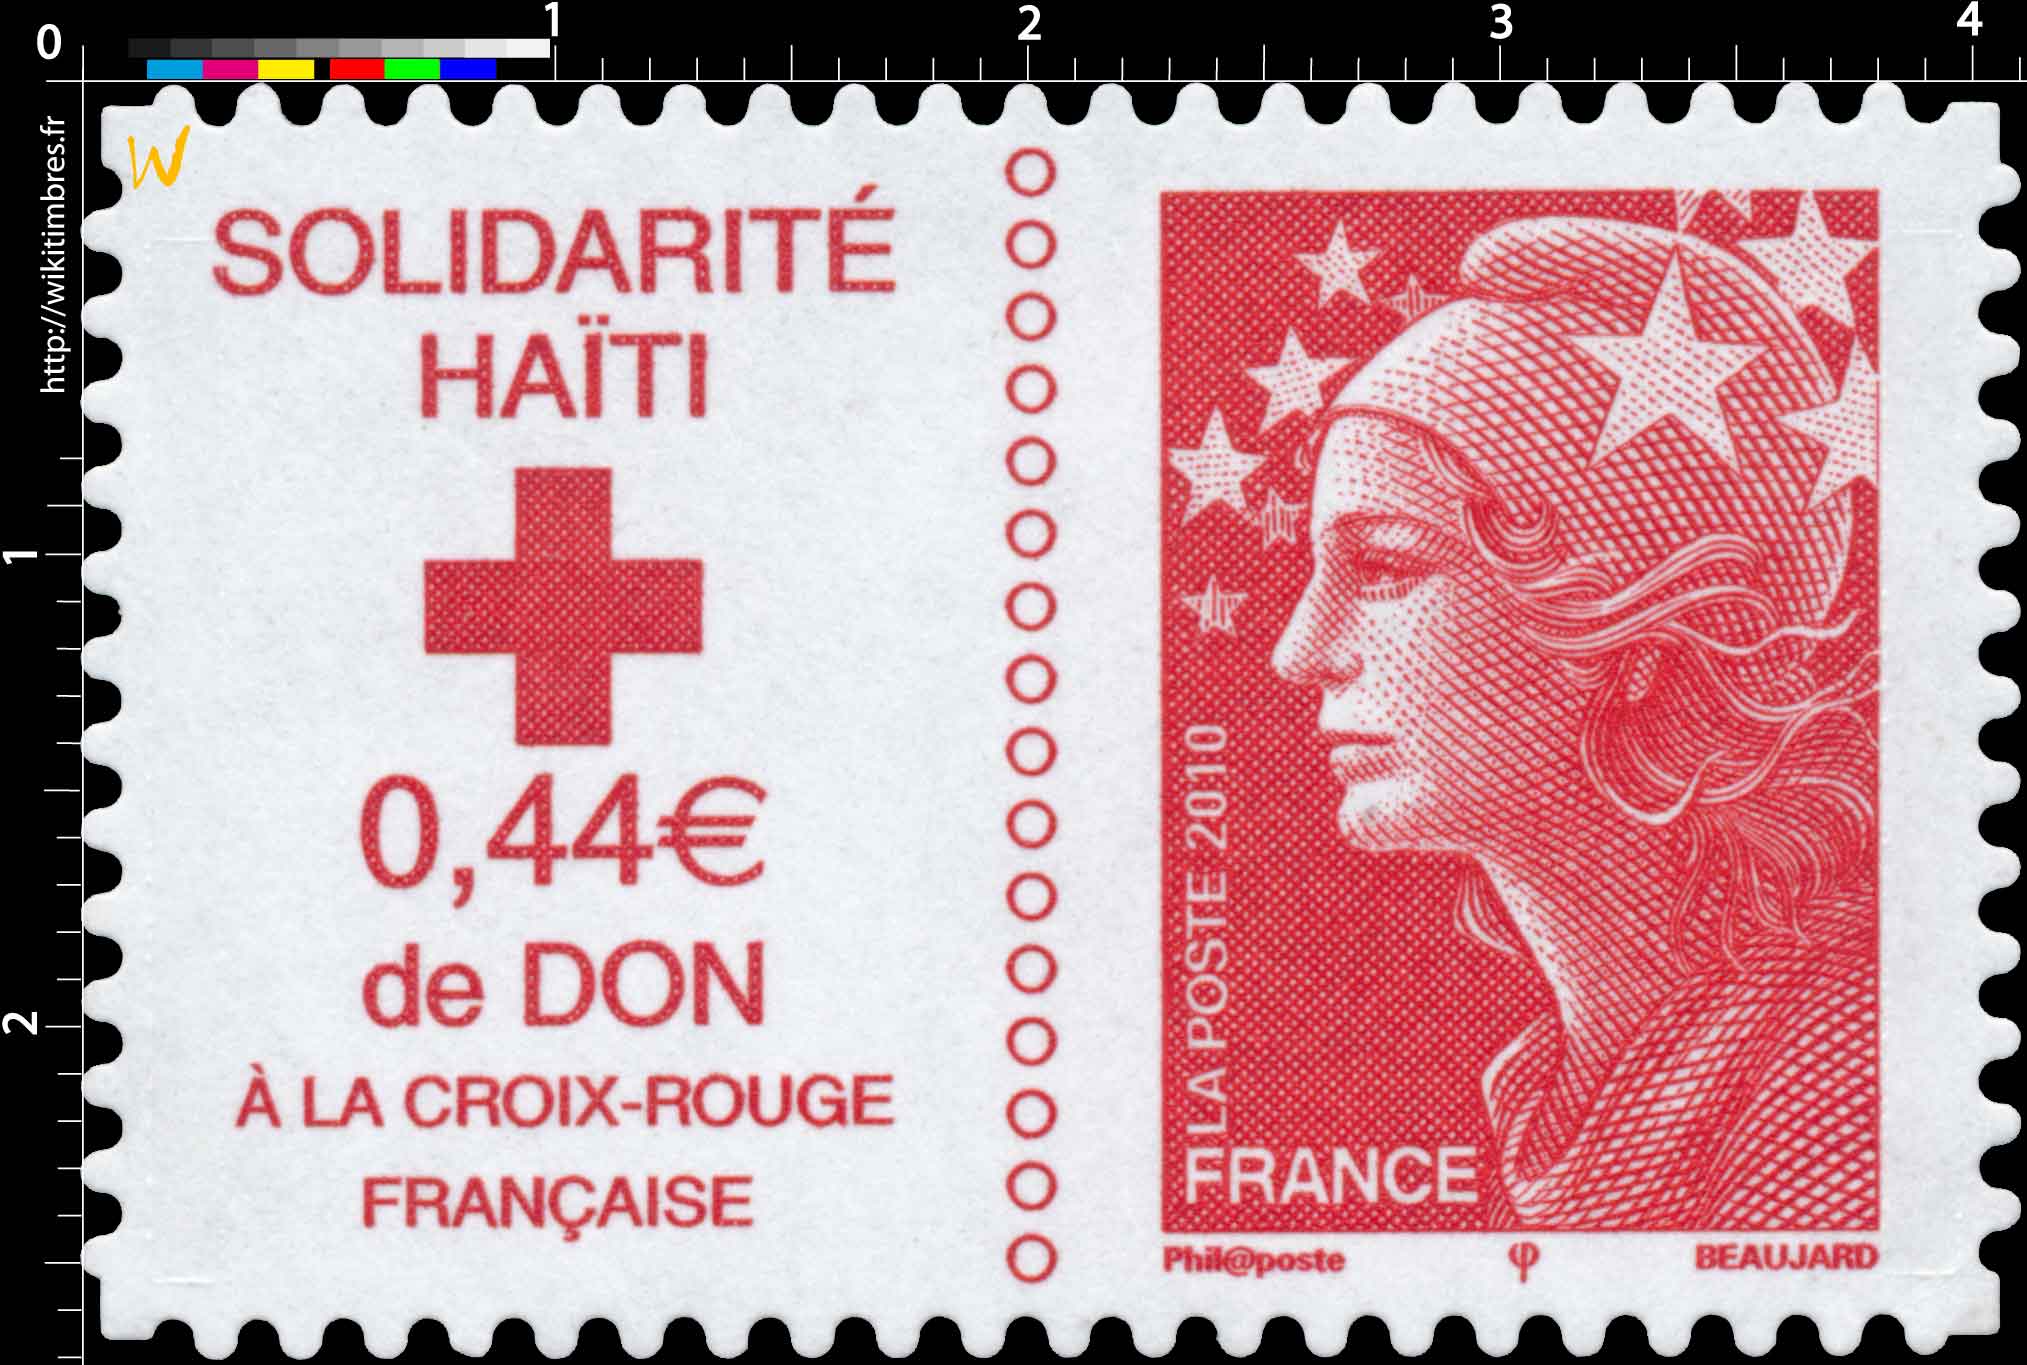 2010 SOLIDARITÉ HAÏTI 0,44€ de DON A LA CROIX-ROUGE FRANCAISE